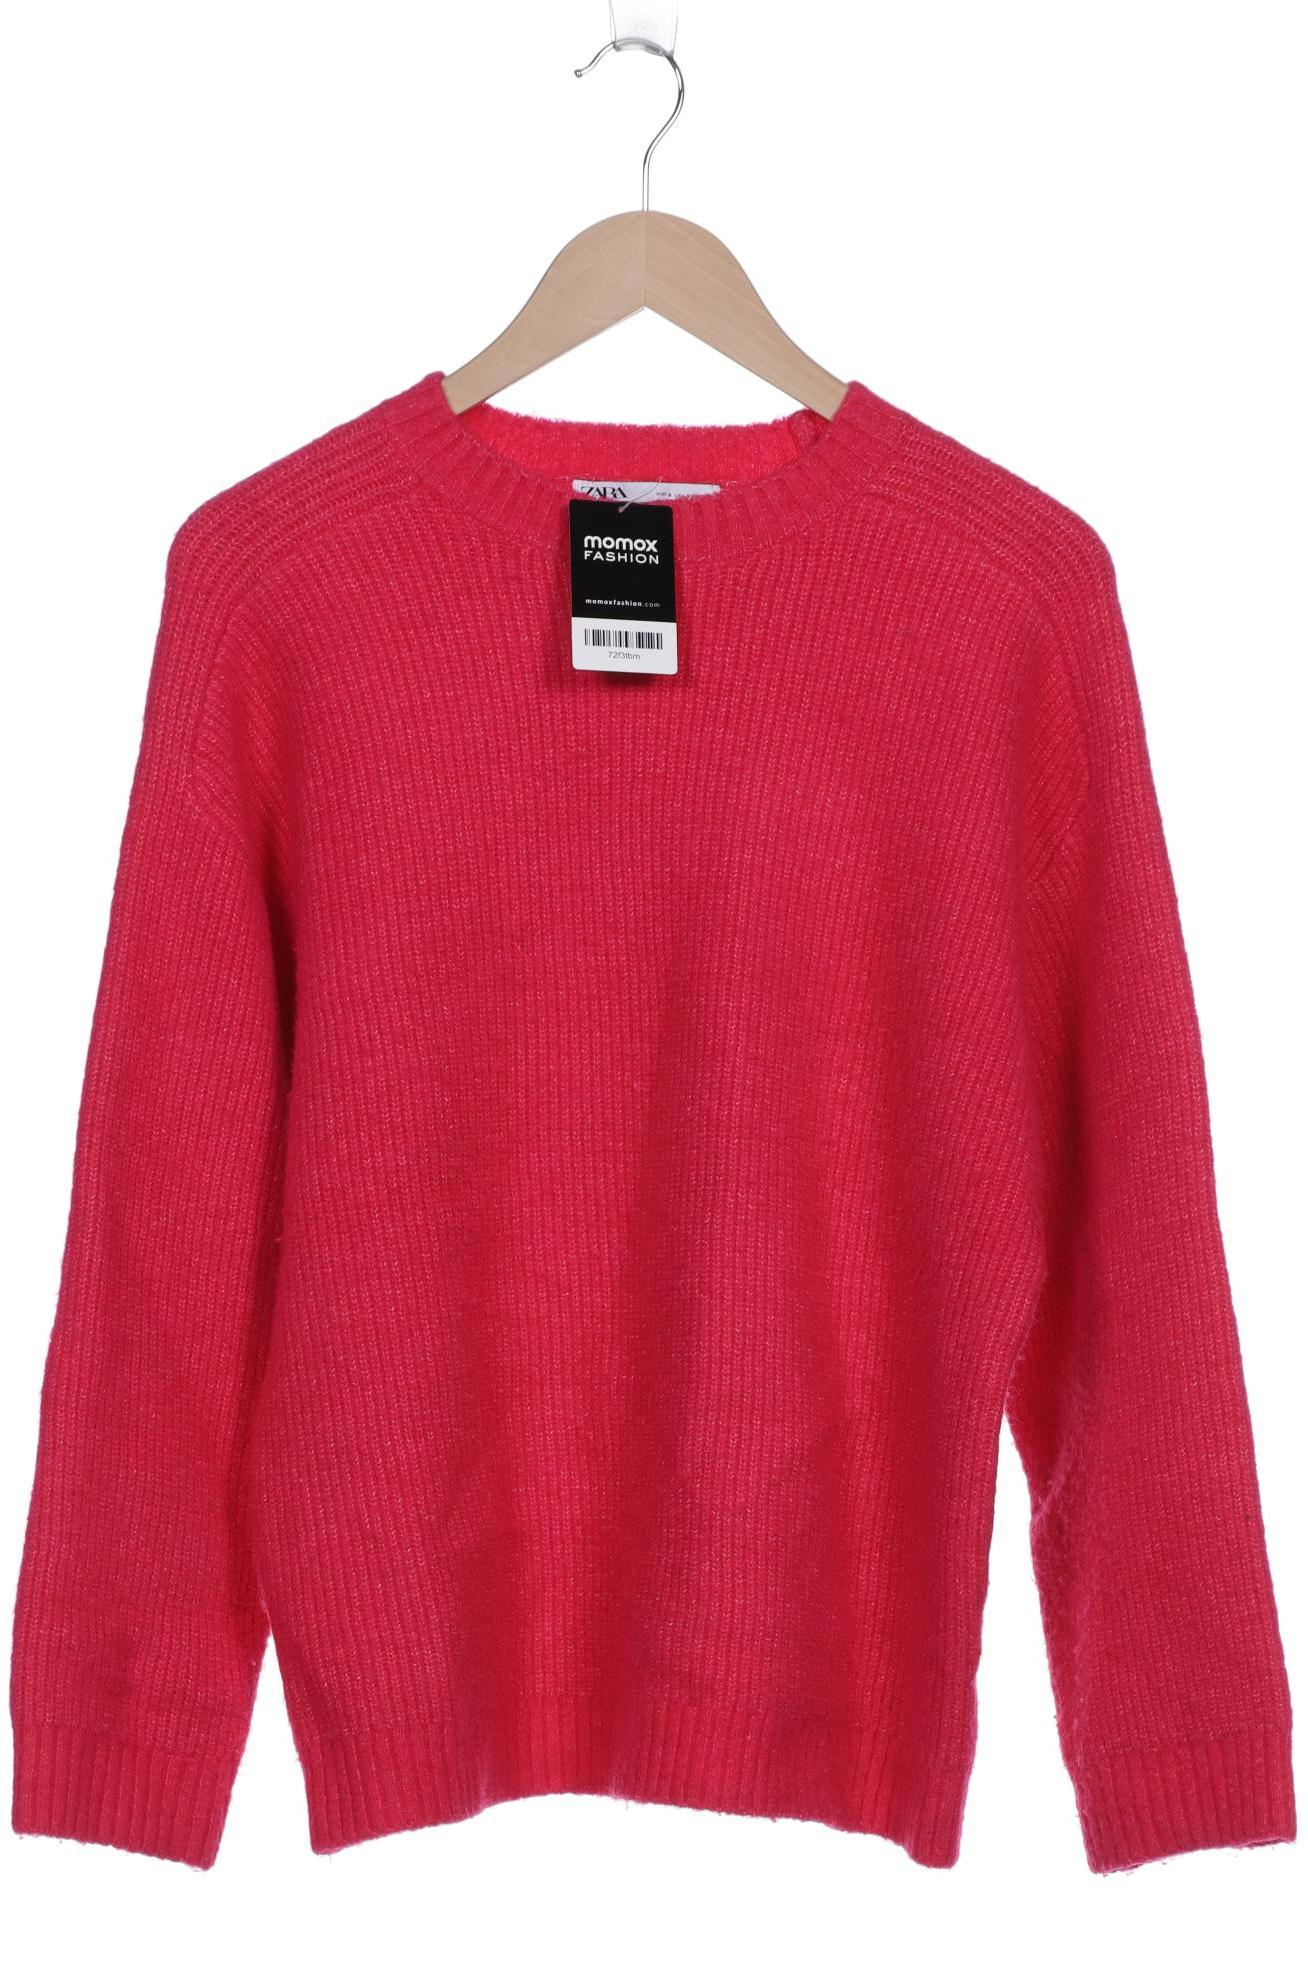 Zara Damen Pullover, pink, Gr. 36 von ZARA